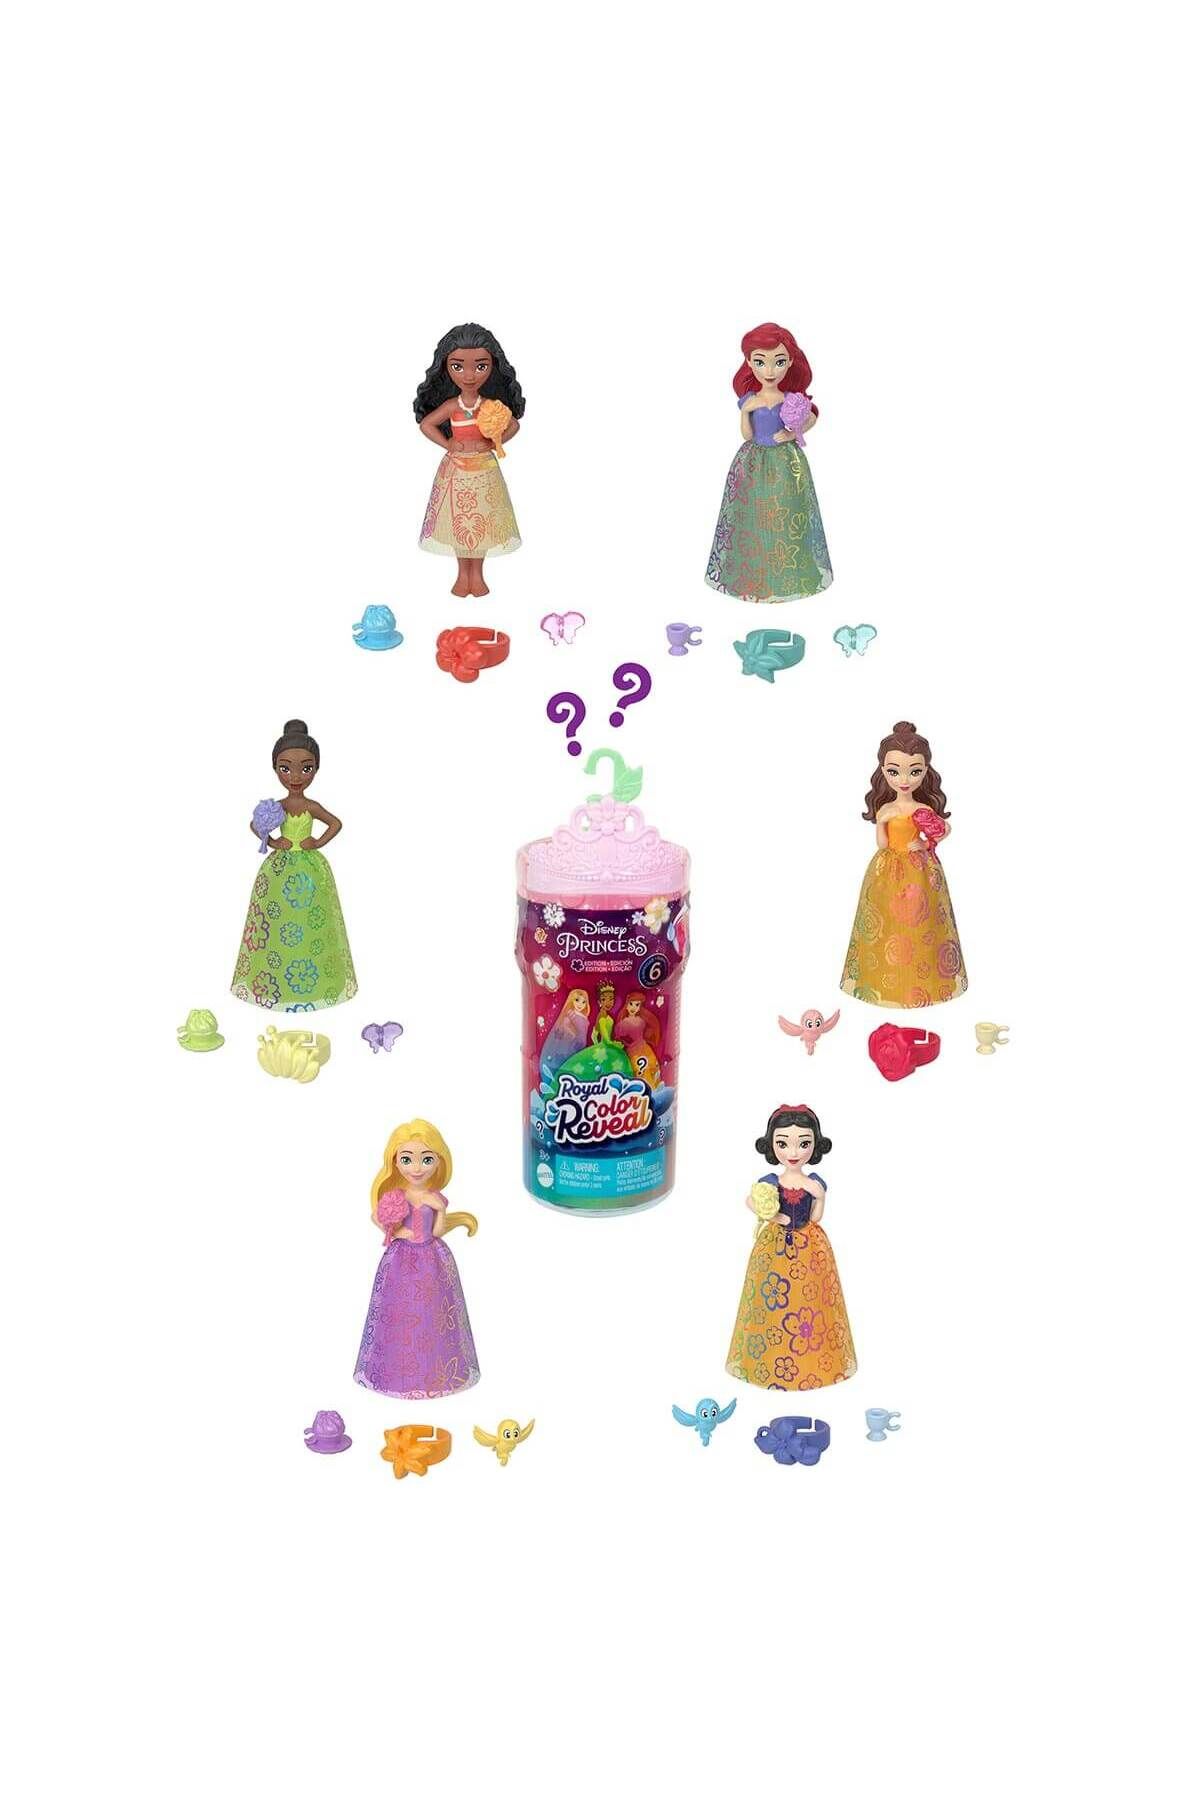 DİSNEY Disney Prenses Royal Color Reveal Renk Değiştiren Prenses Bebekler Sürpriz Paket HRN63